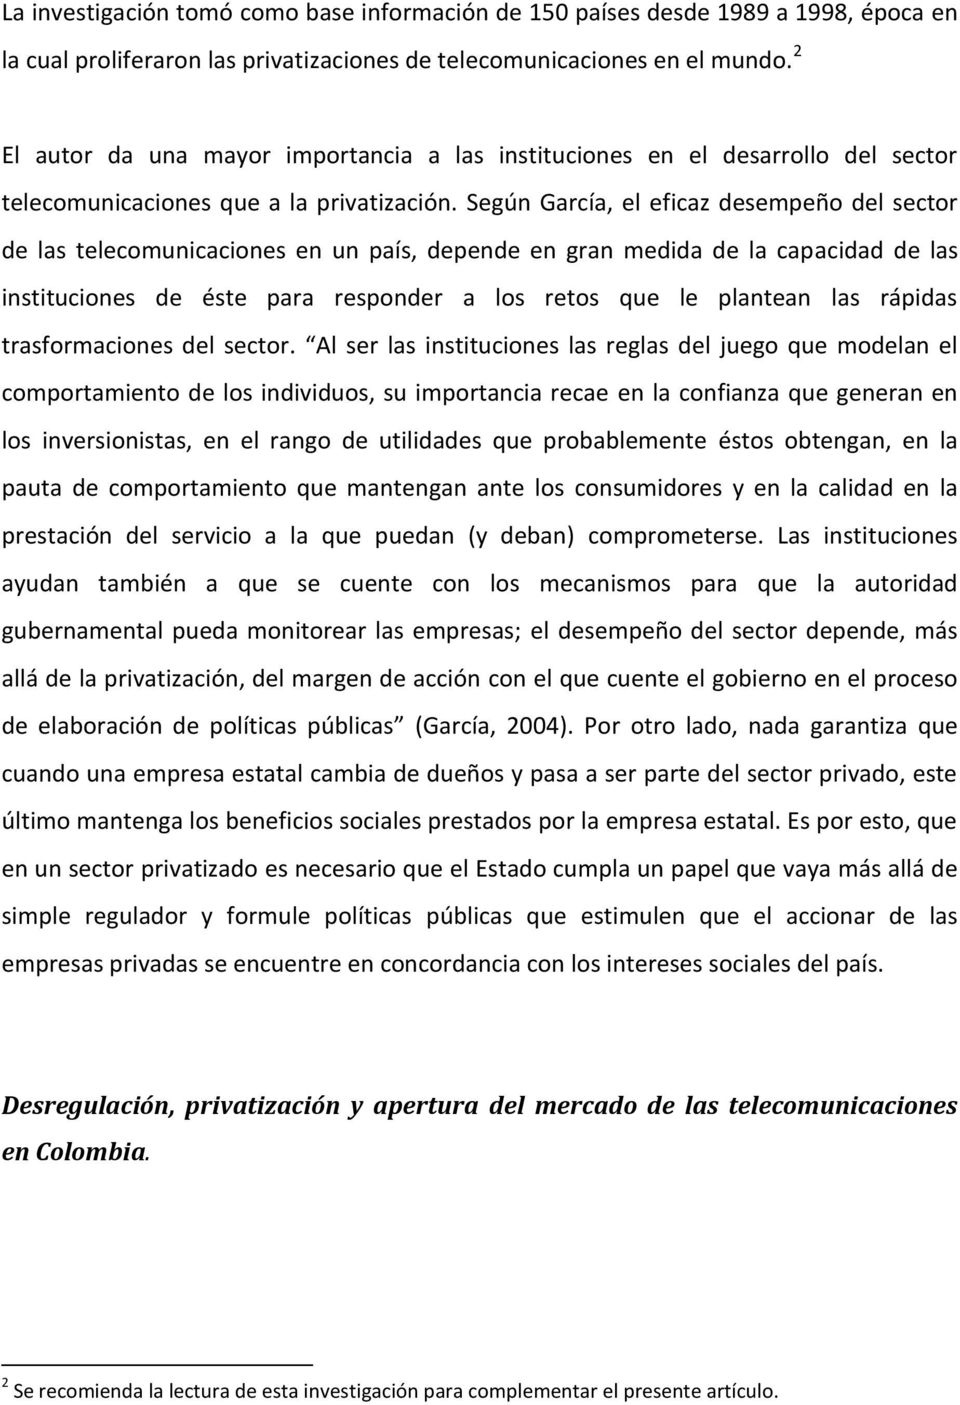 Según García, el eficaz desempeño del sector de las telecomunicaciones en un país, depende en gran medida de la capacidad de las instituciones de éste para responder a los retos que le plantean las